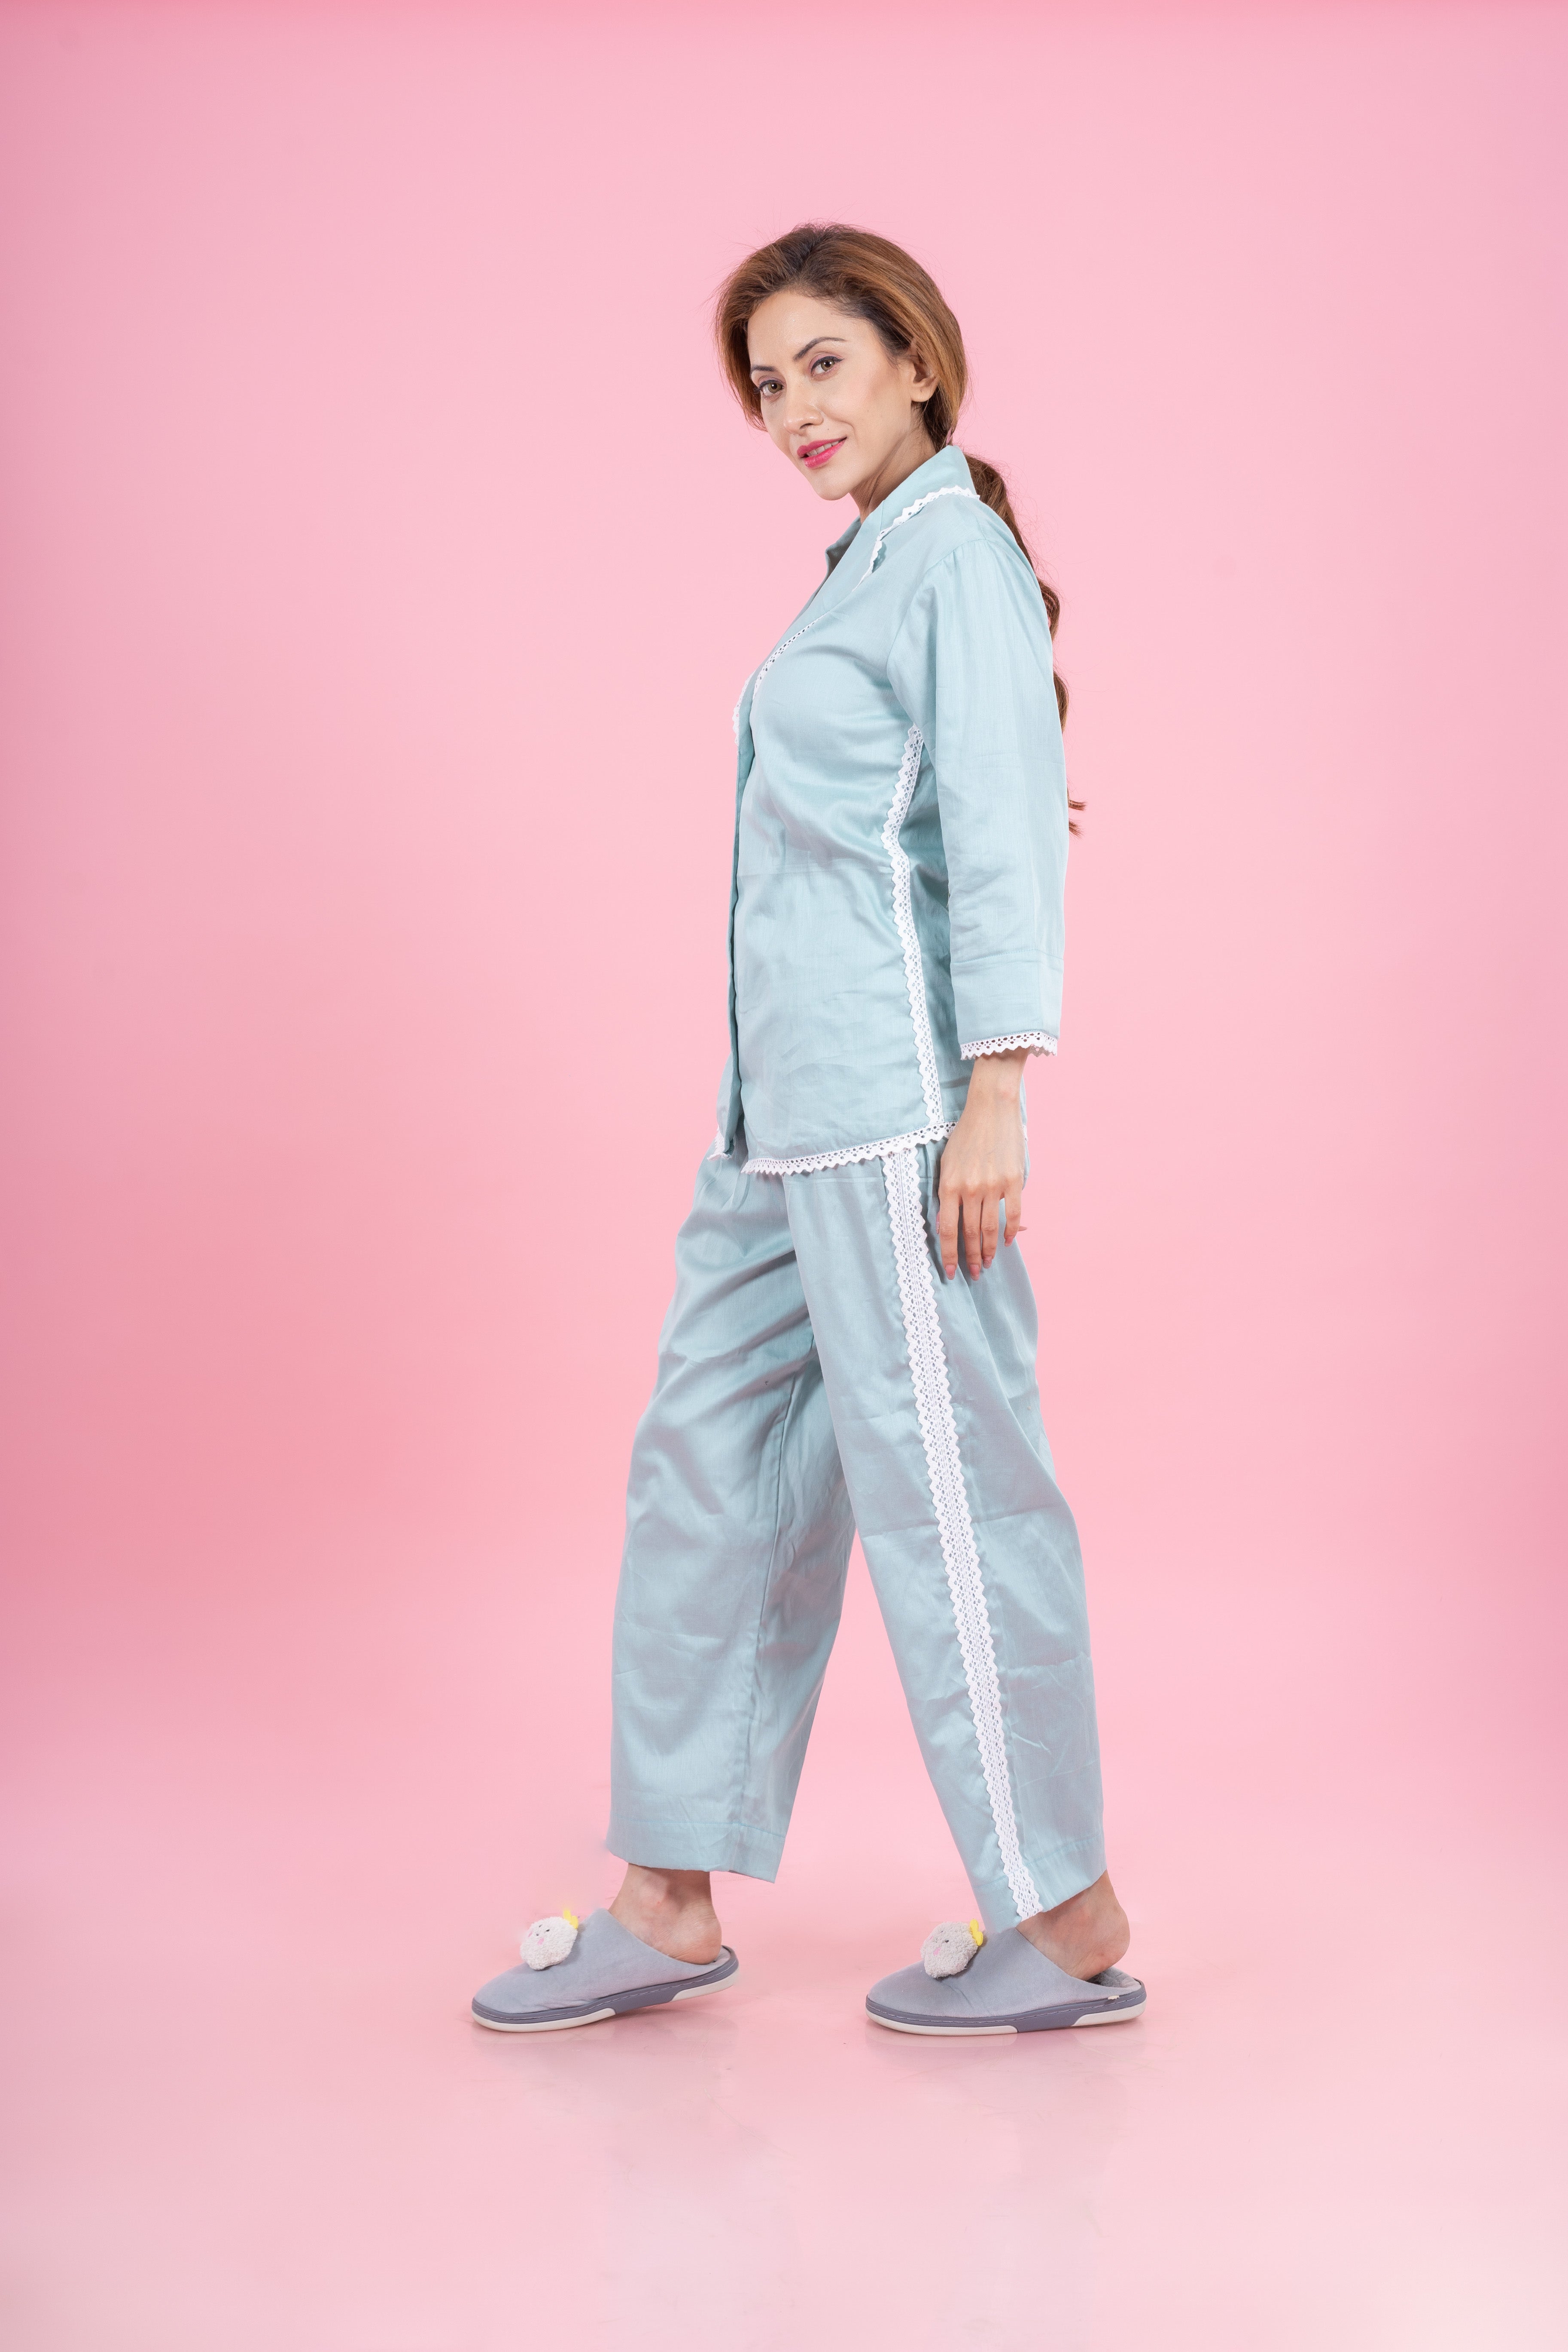 Buy Fleece Baby Pink Winter Night Suit for Women at Secret Wish | 495345